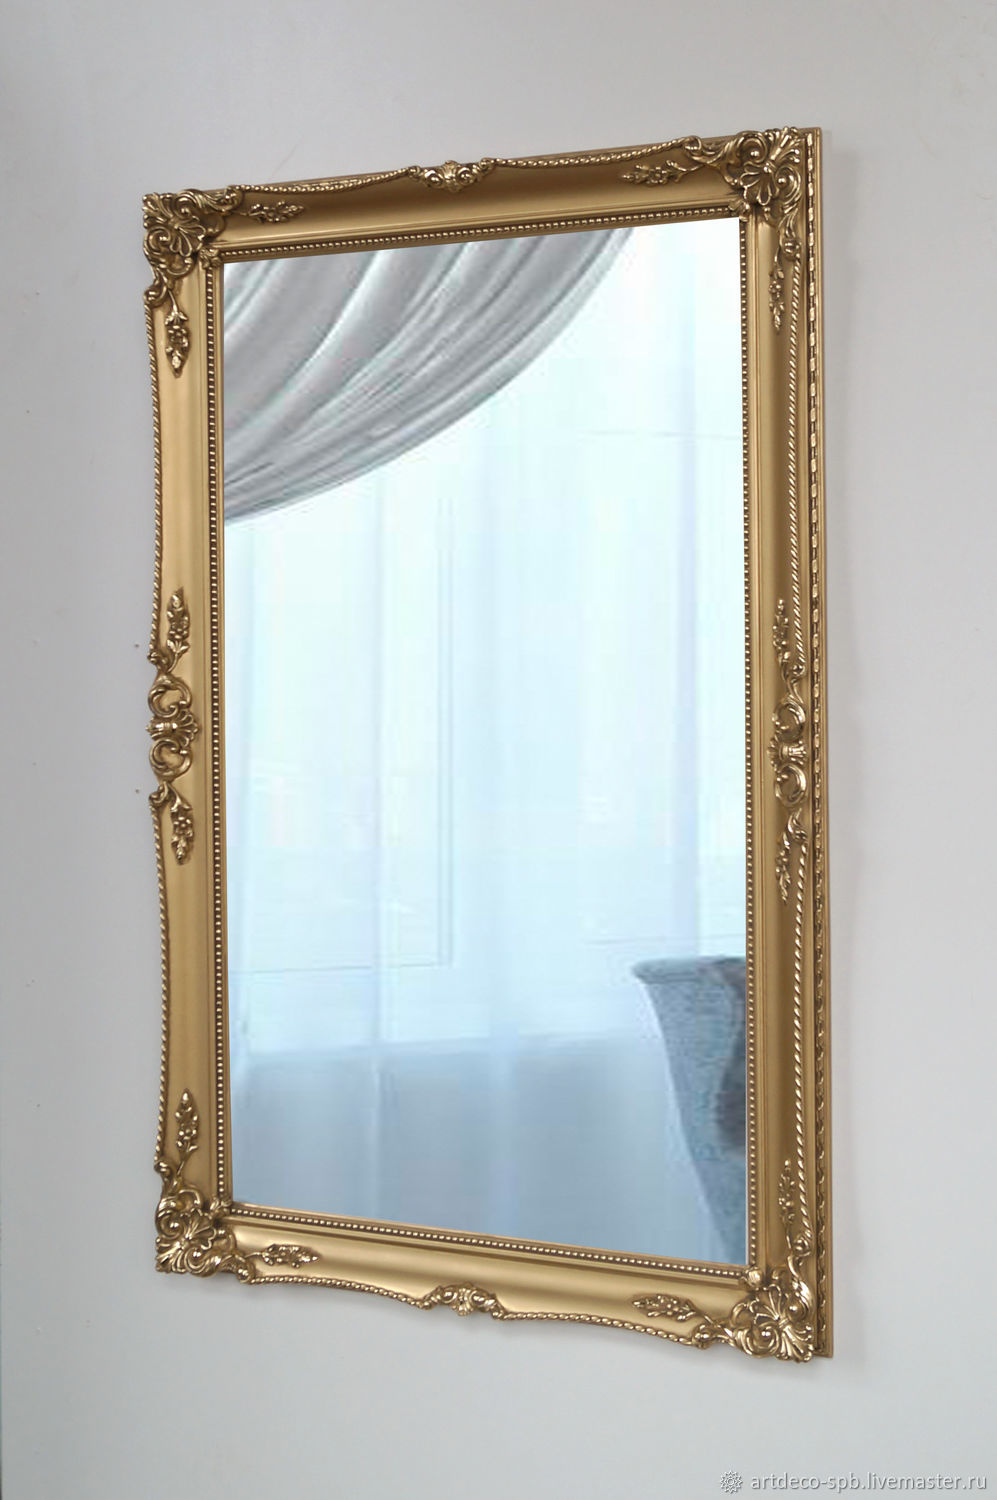 Зеркала в раме в спб. Мастерская АРТДЕКО Artdeco-spb. Багет для зеркала. Зеркало в багетной раме. Зеркало в канатной раме.